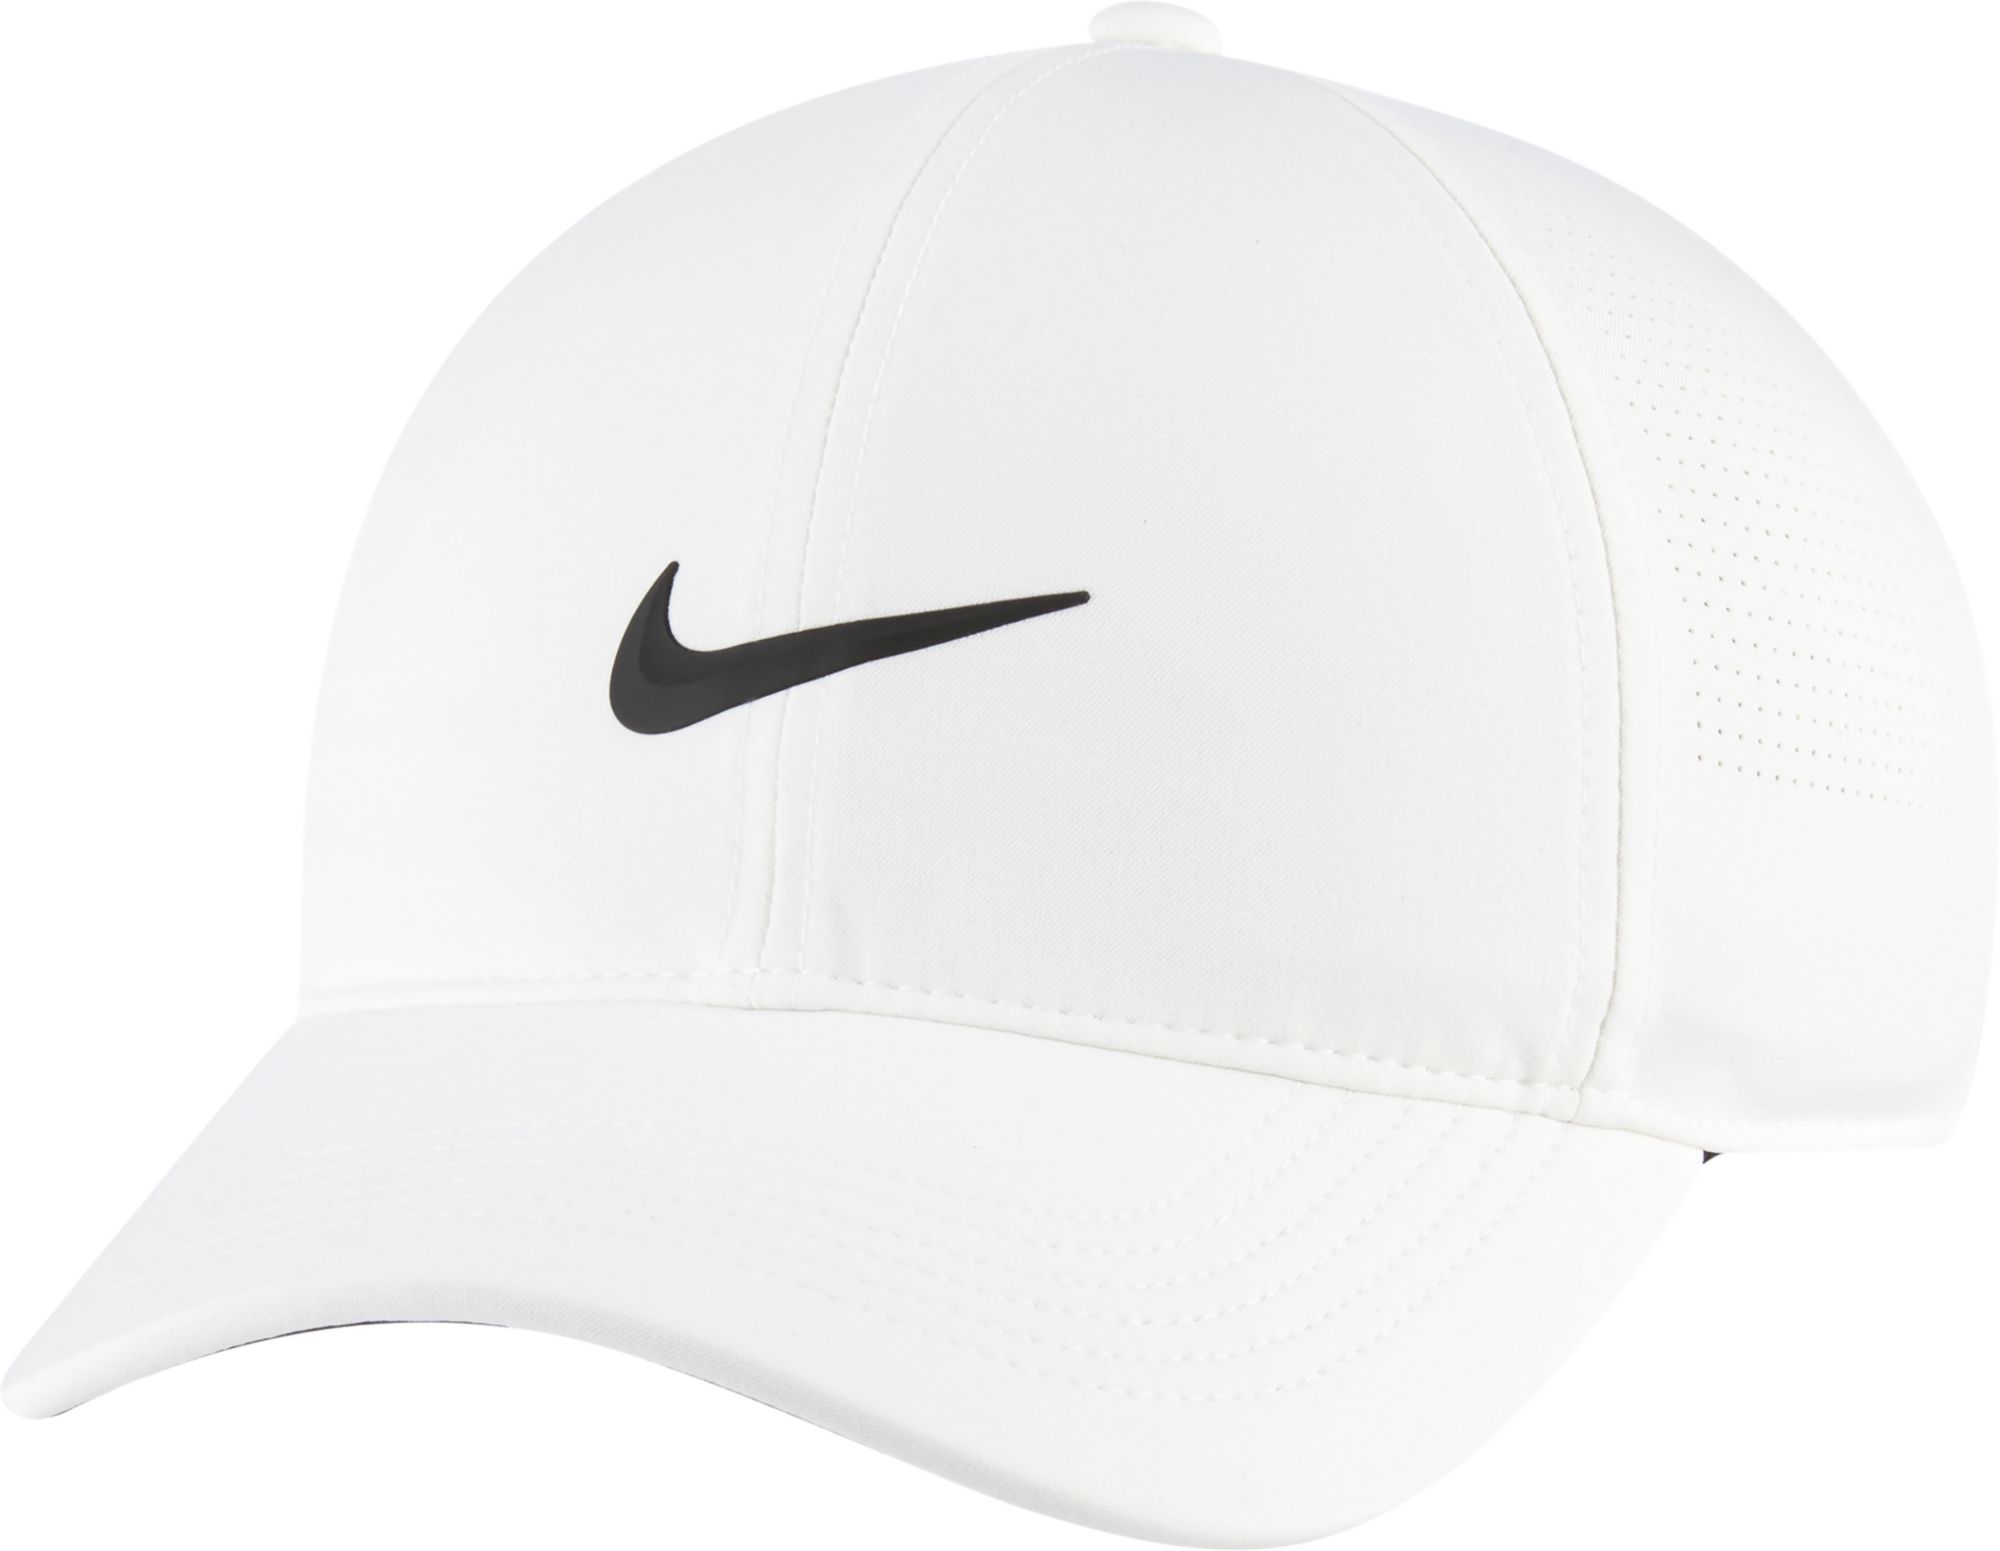 Nike Women's Aerobill Visor Hat, White/Anthracite/Black, Misc